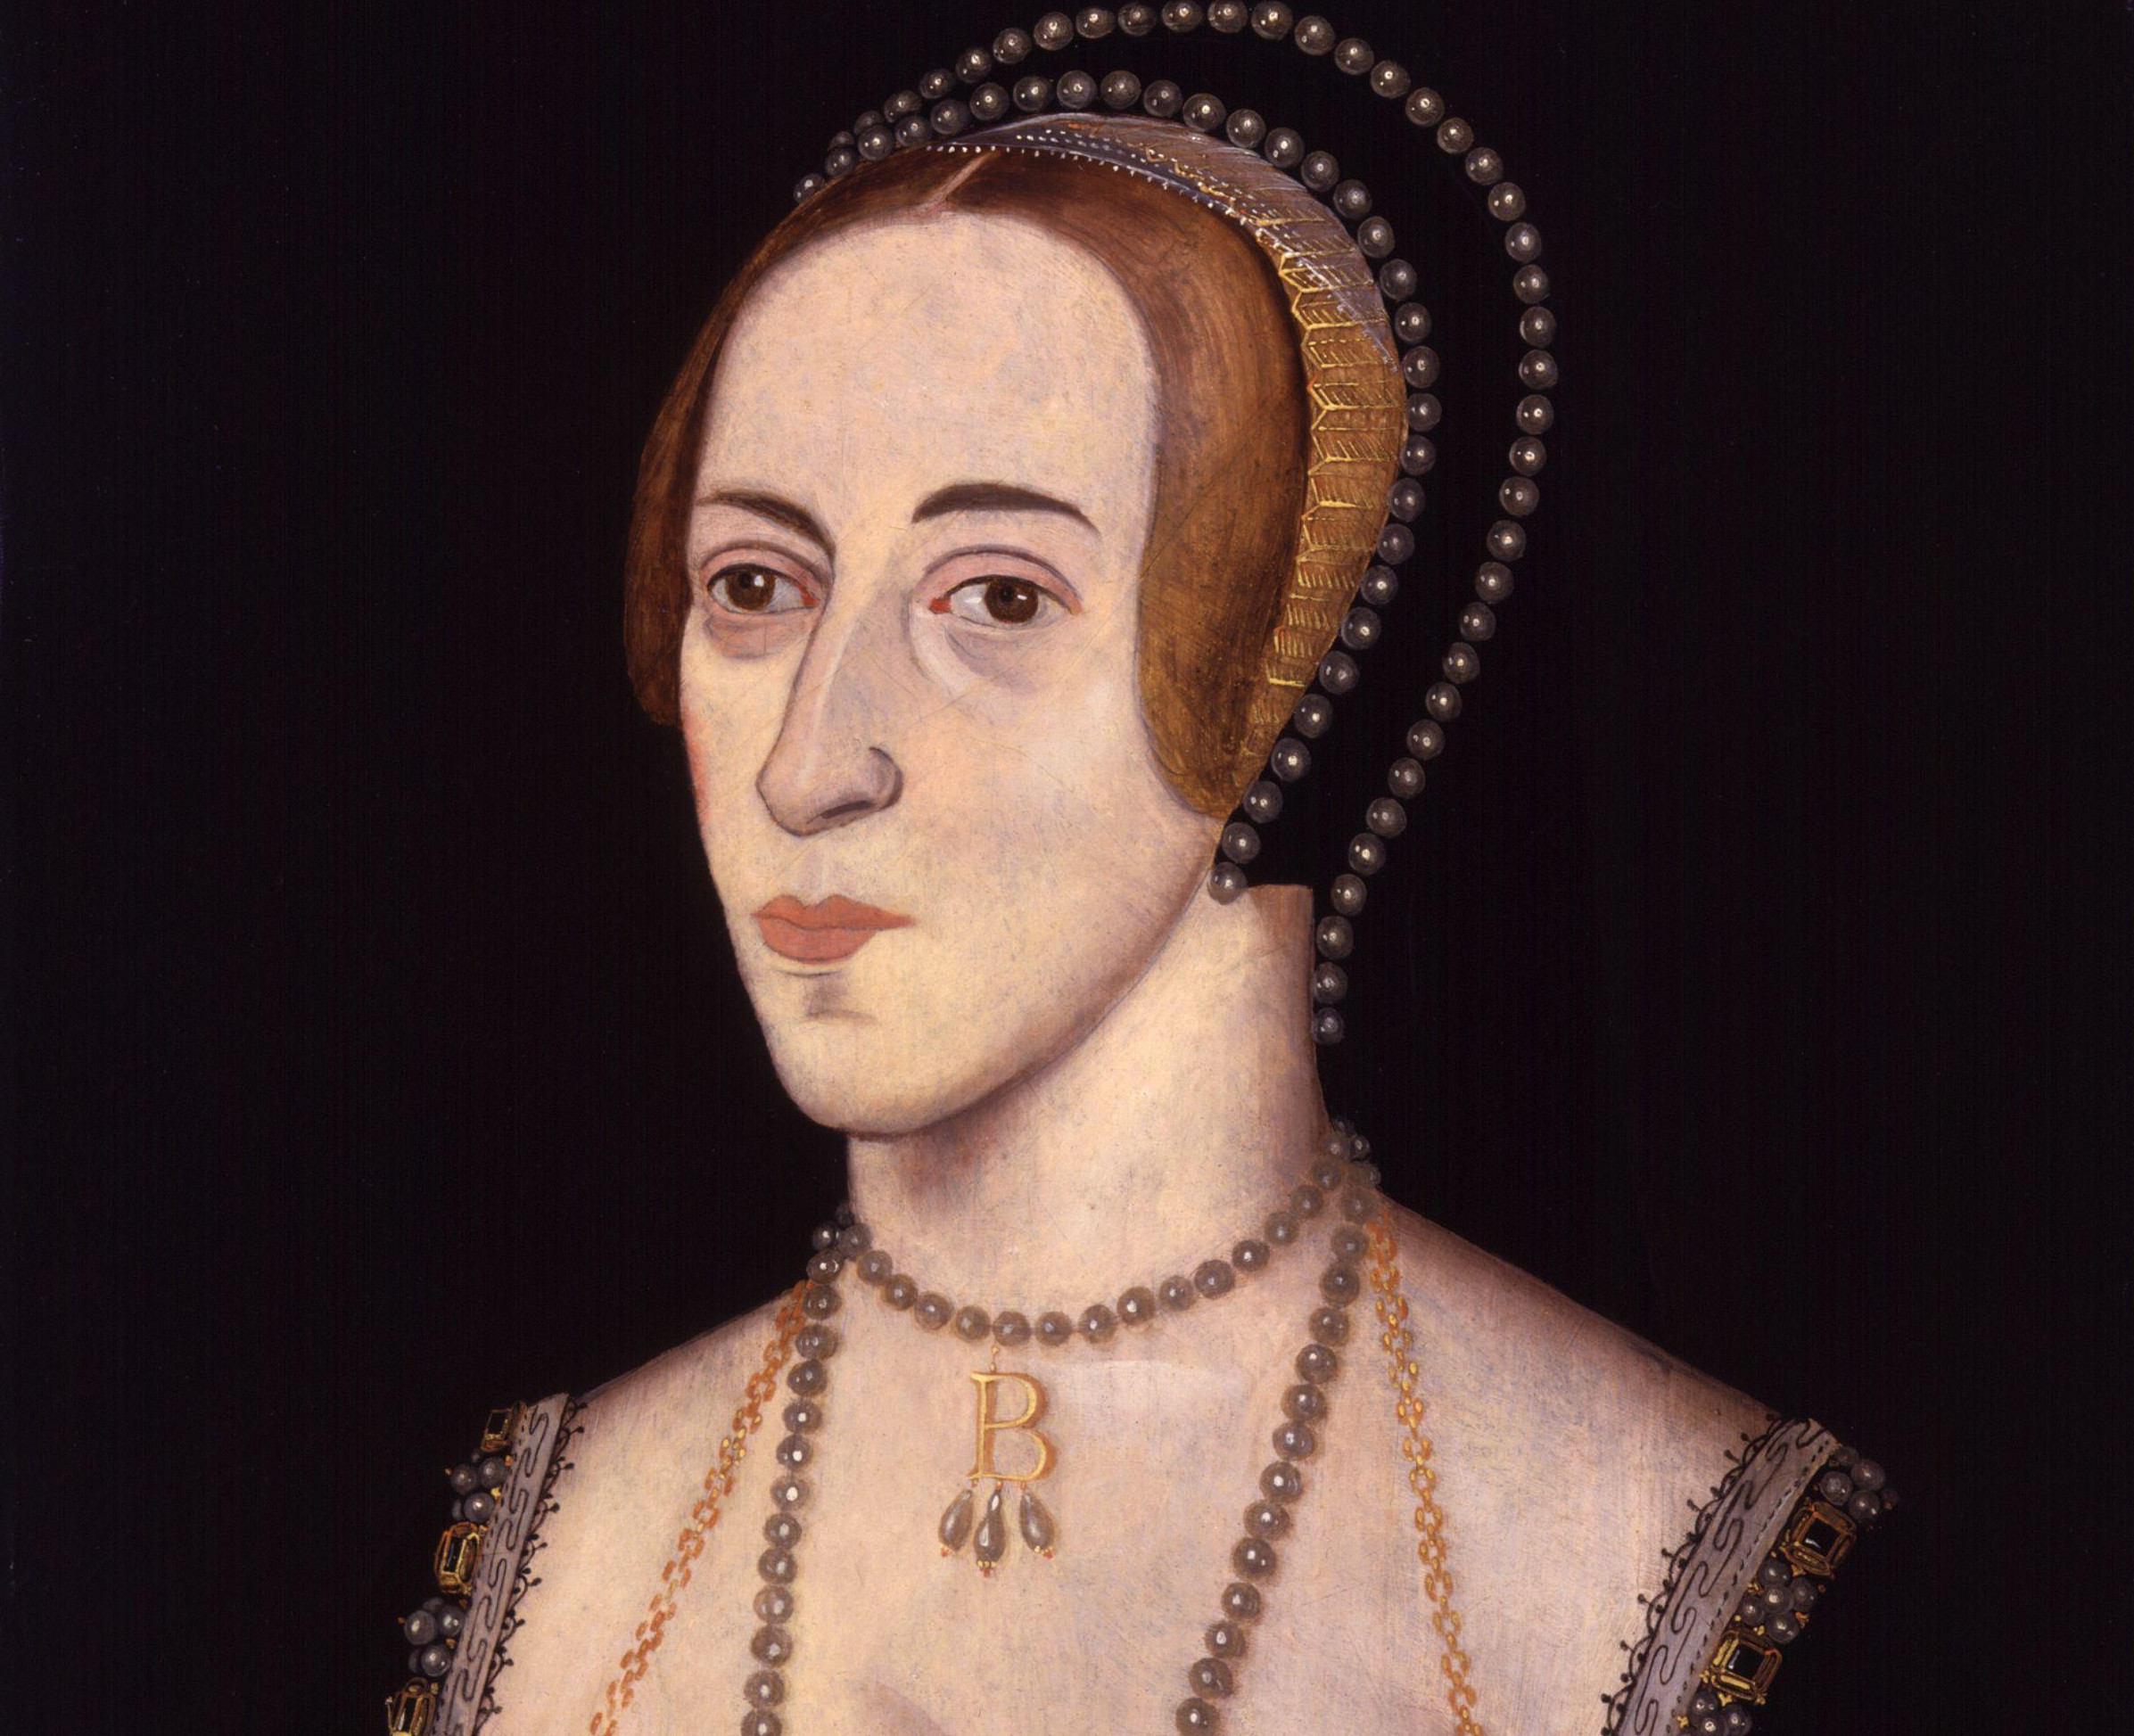 Portrait of Anne Boleyn